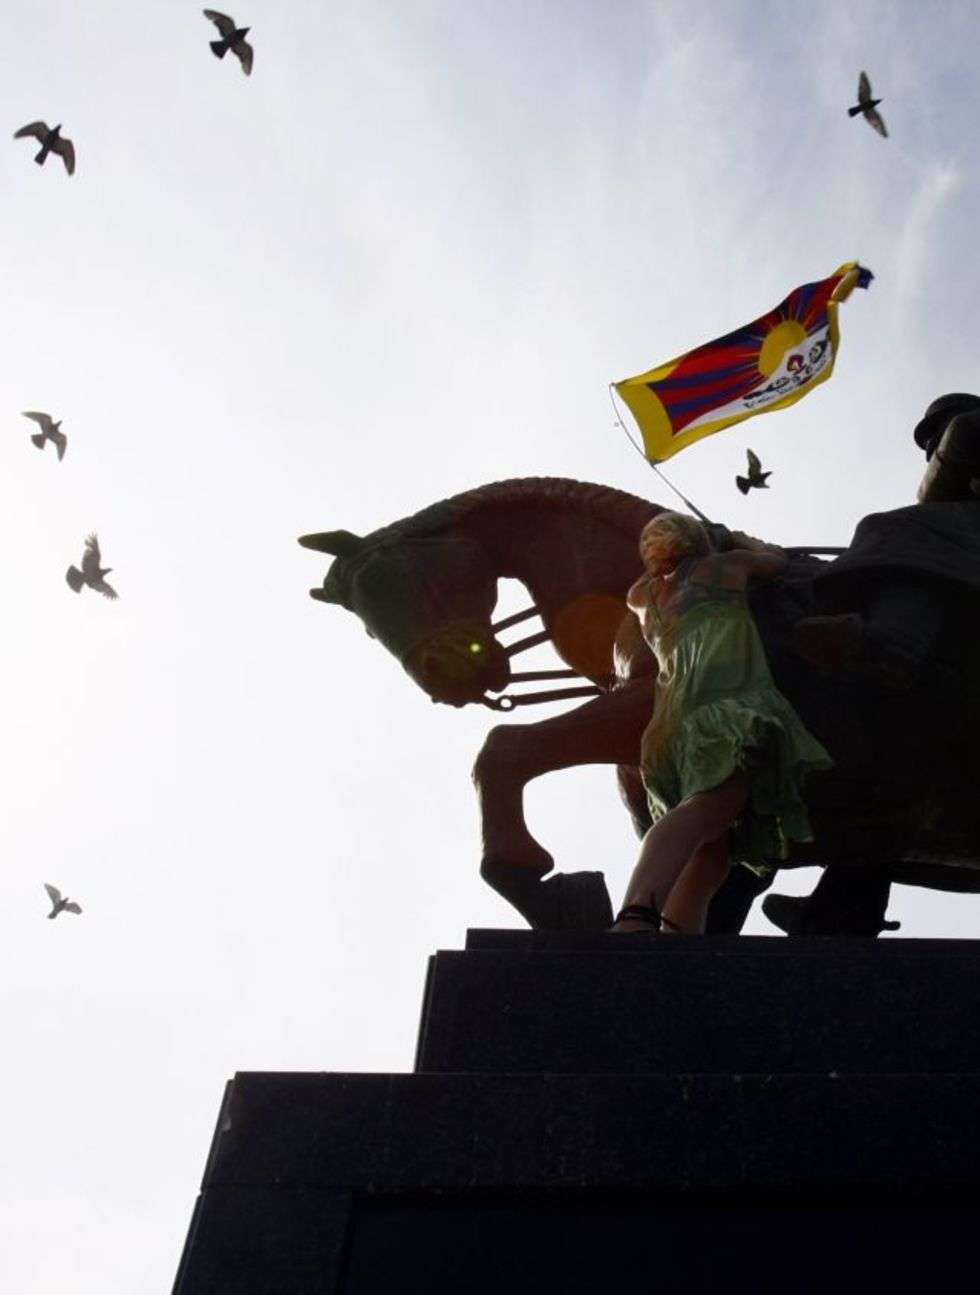  Flaga Tybetu zawieszona na pomniku Józefa Pilsudskiego.
